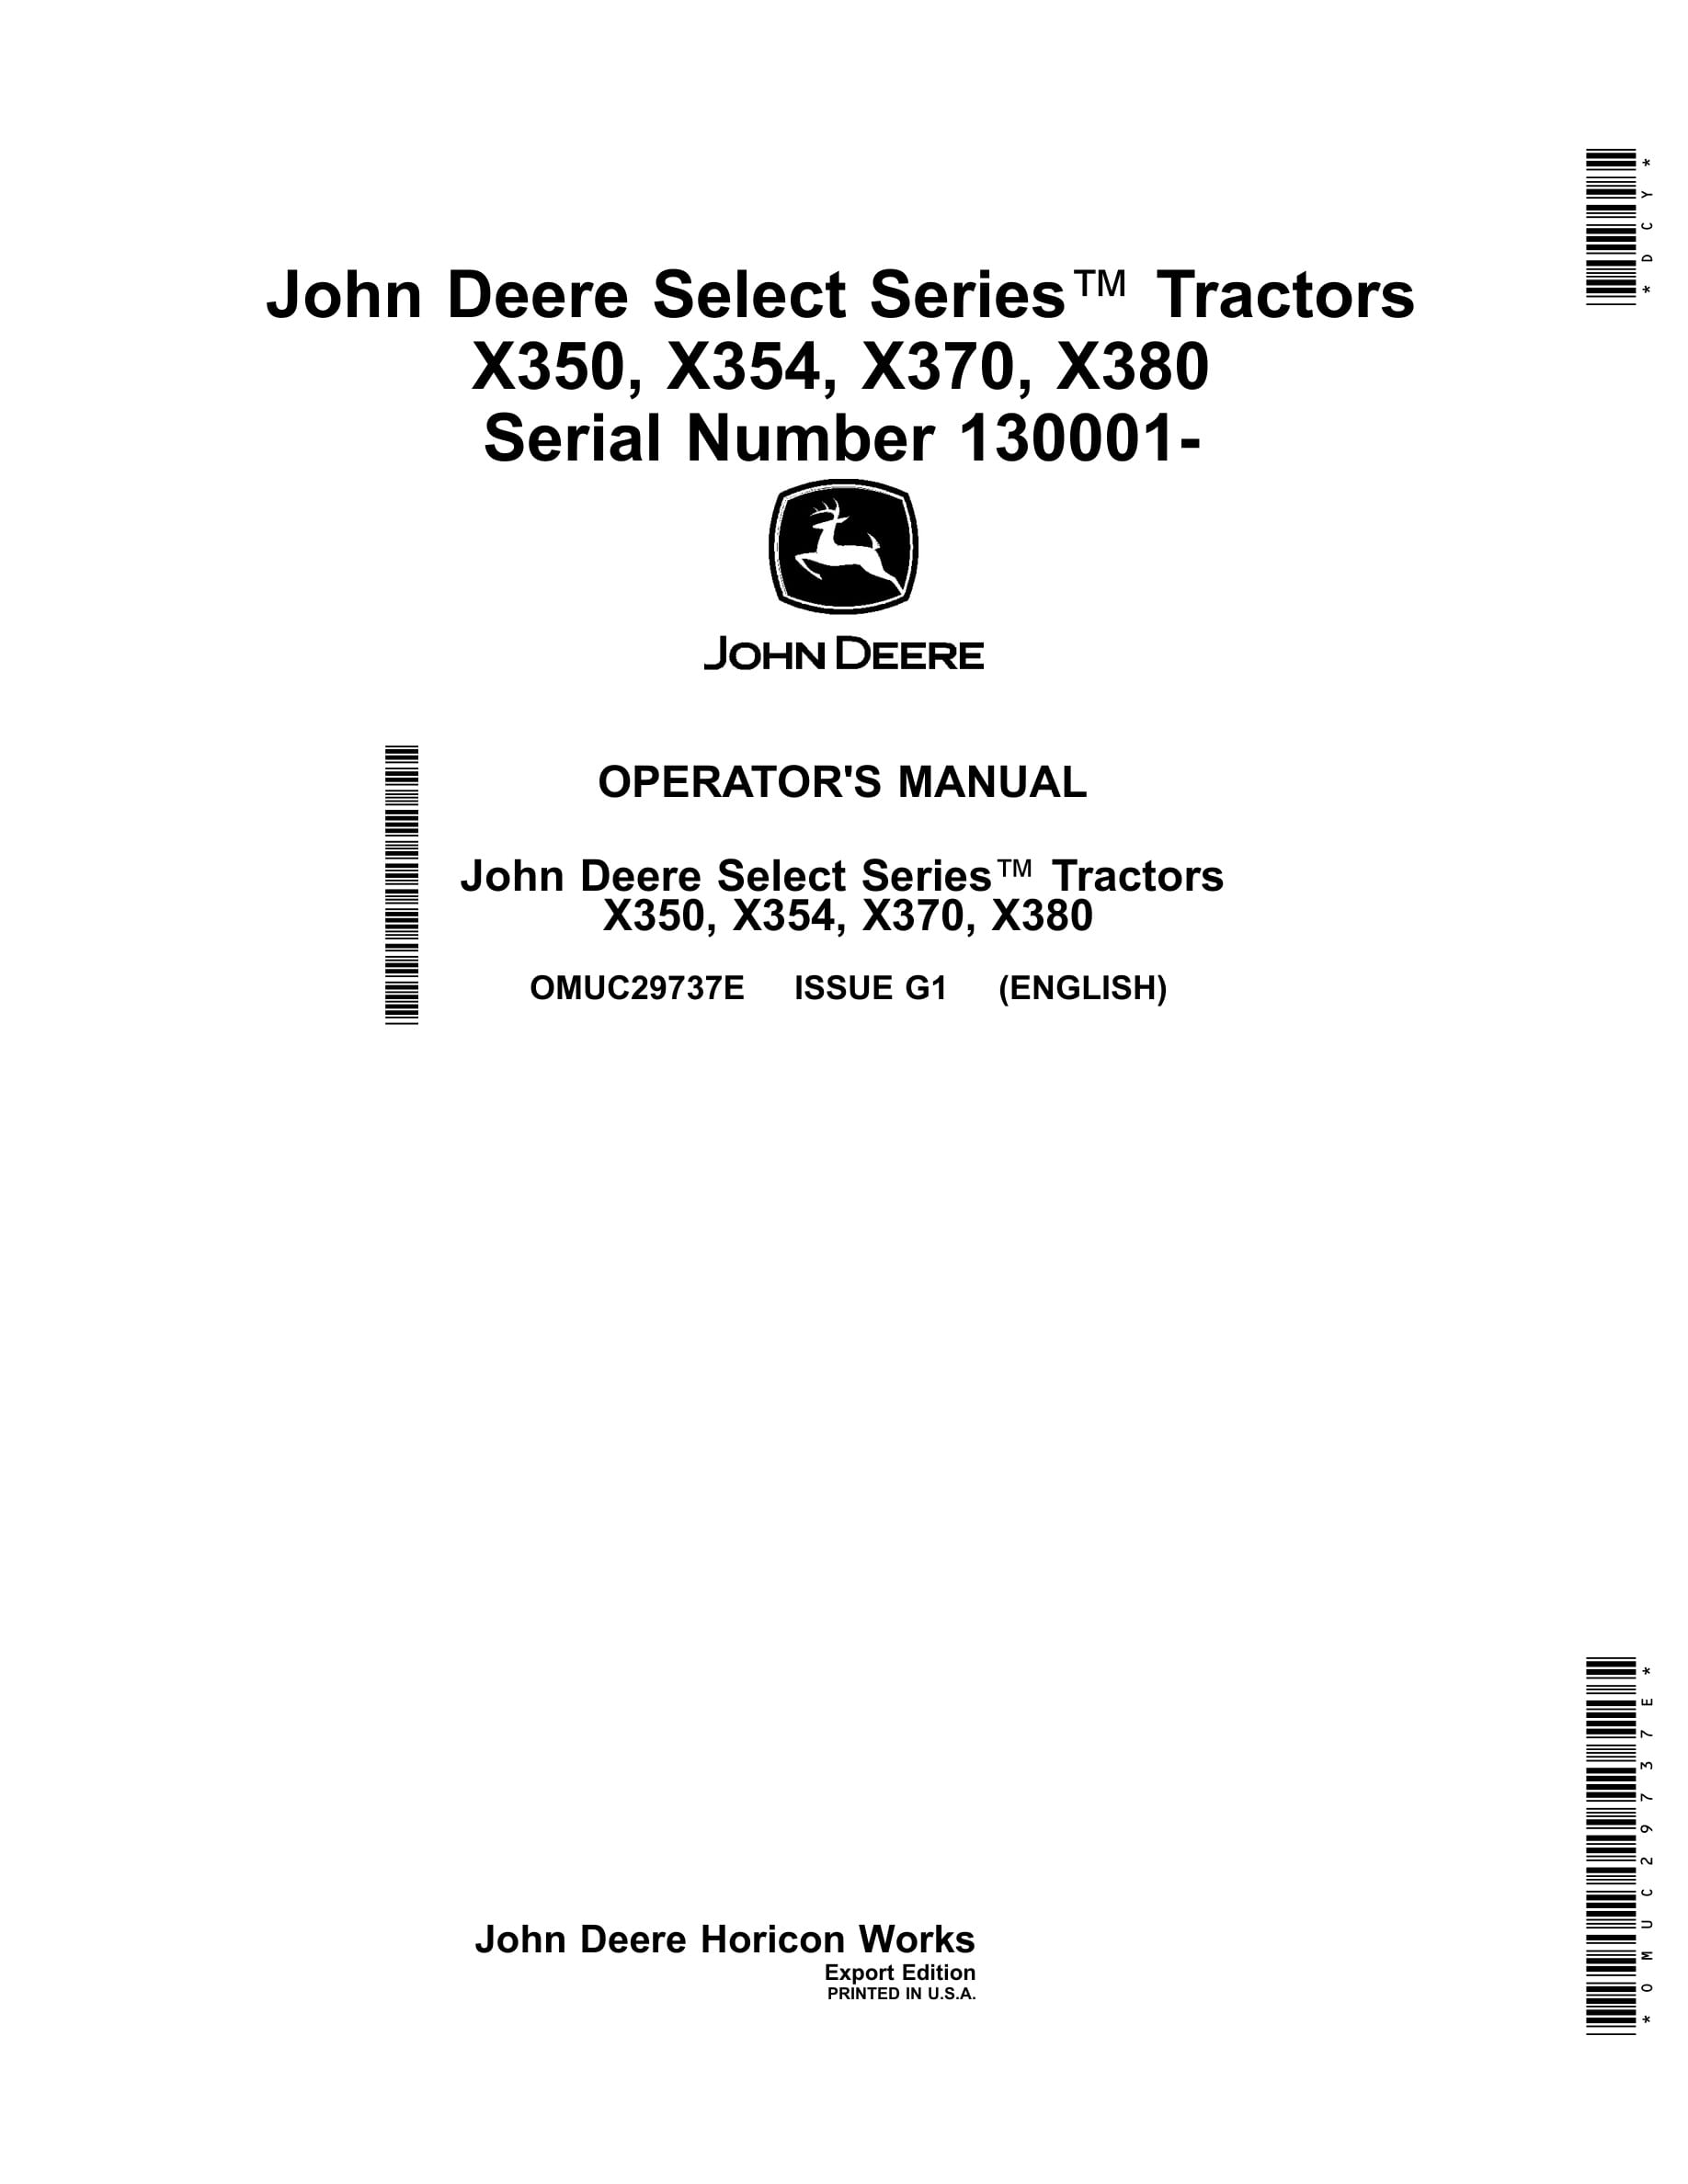 John Deere X350, X354, X370, X380 Tractors Operator Manuals OMUC29737e-1